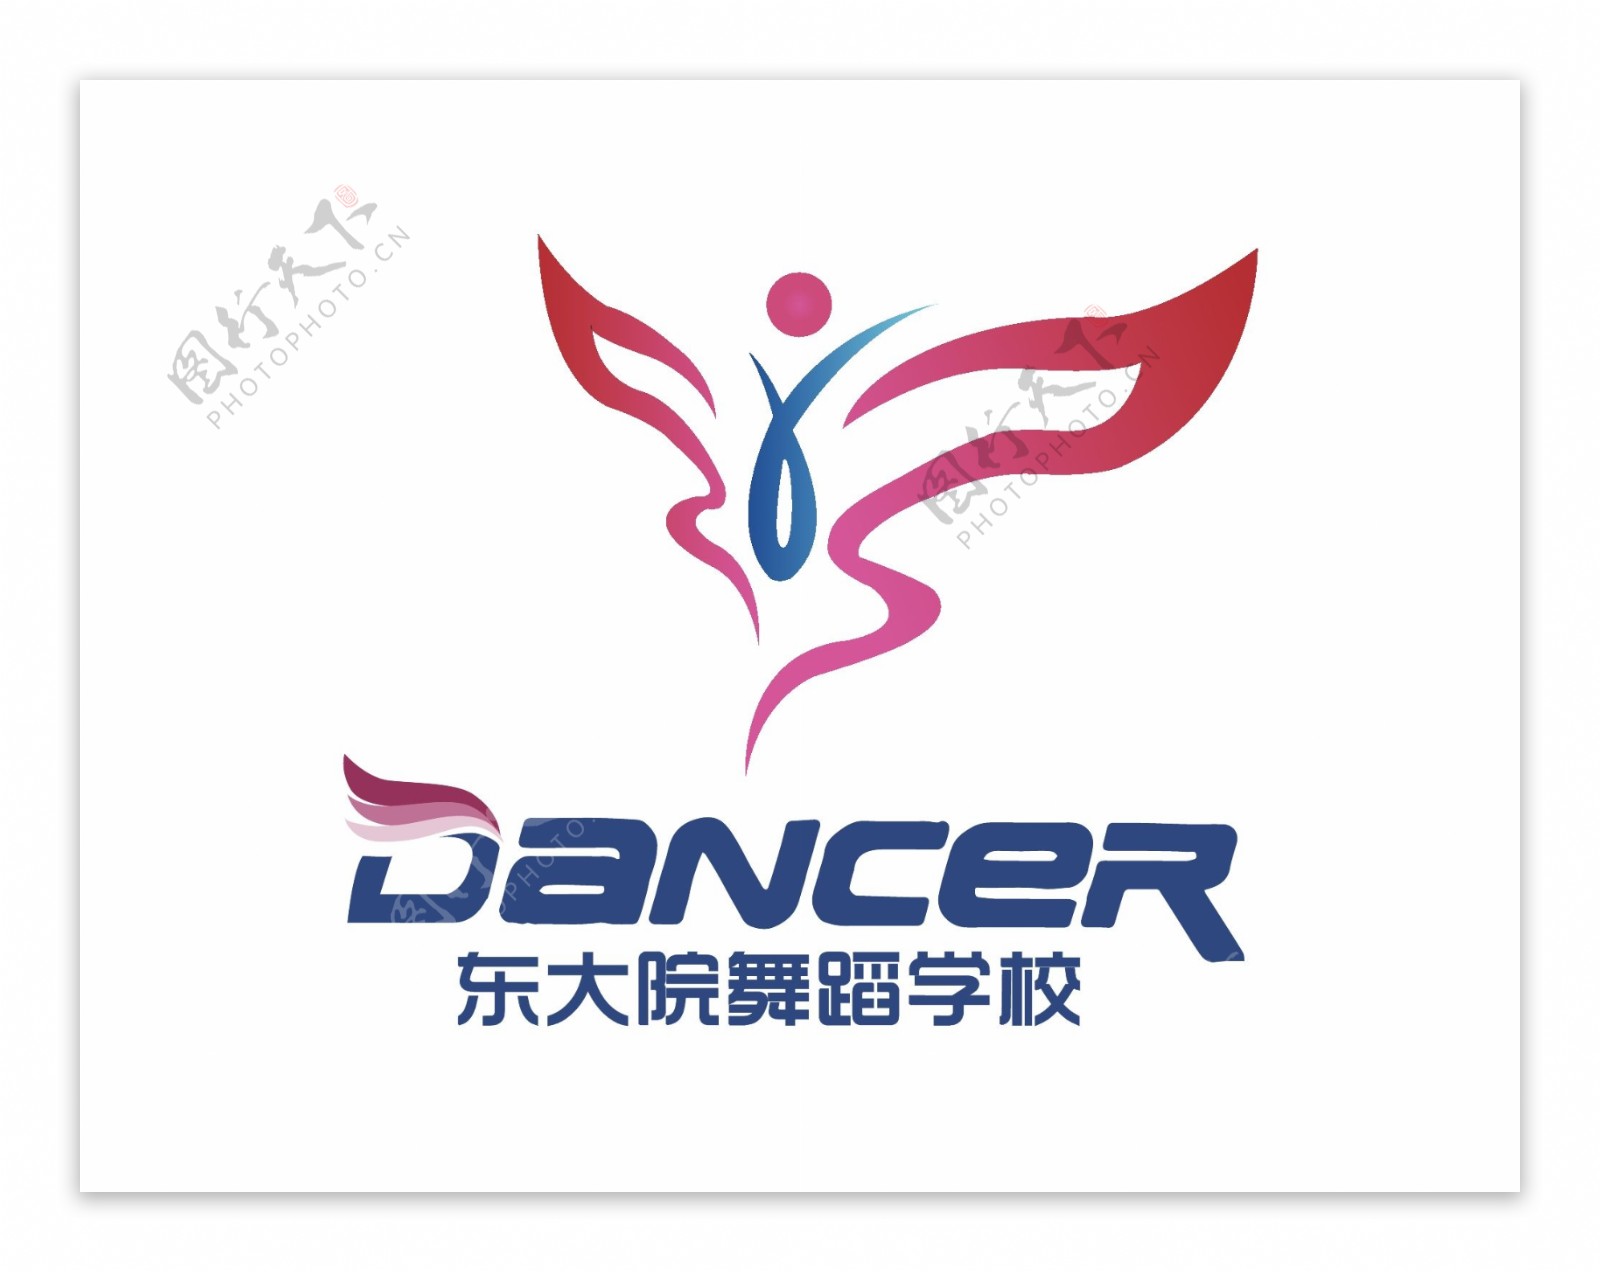 舞蹈logo设计模板